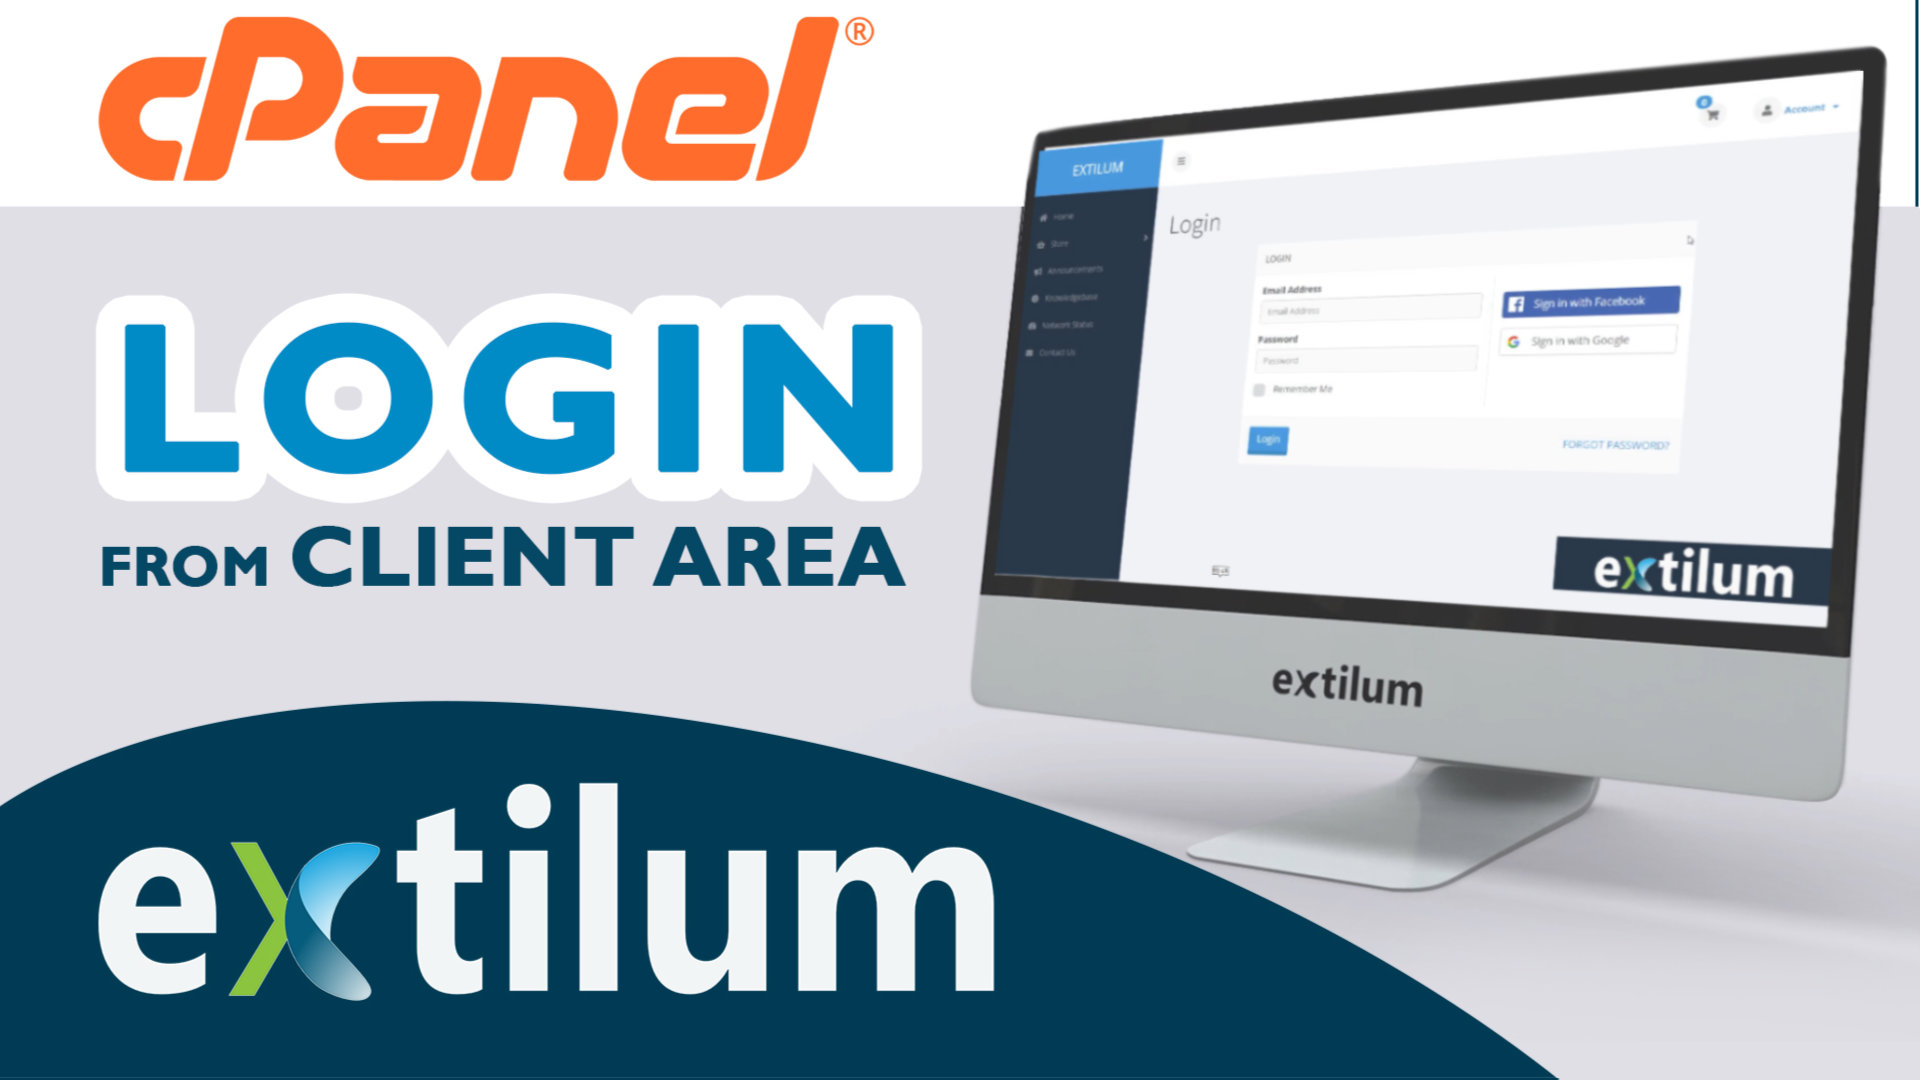 Extilum cpanel - login from client area